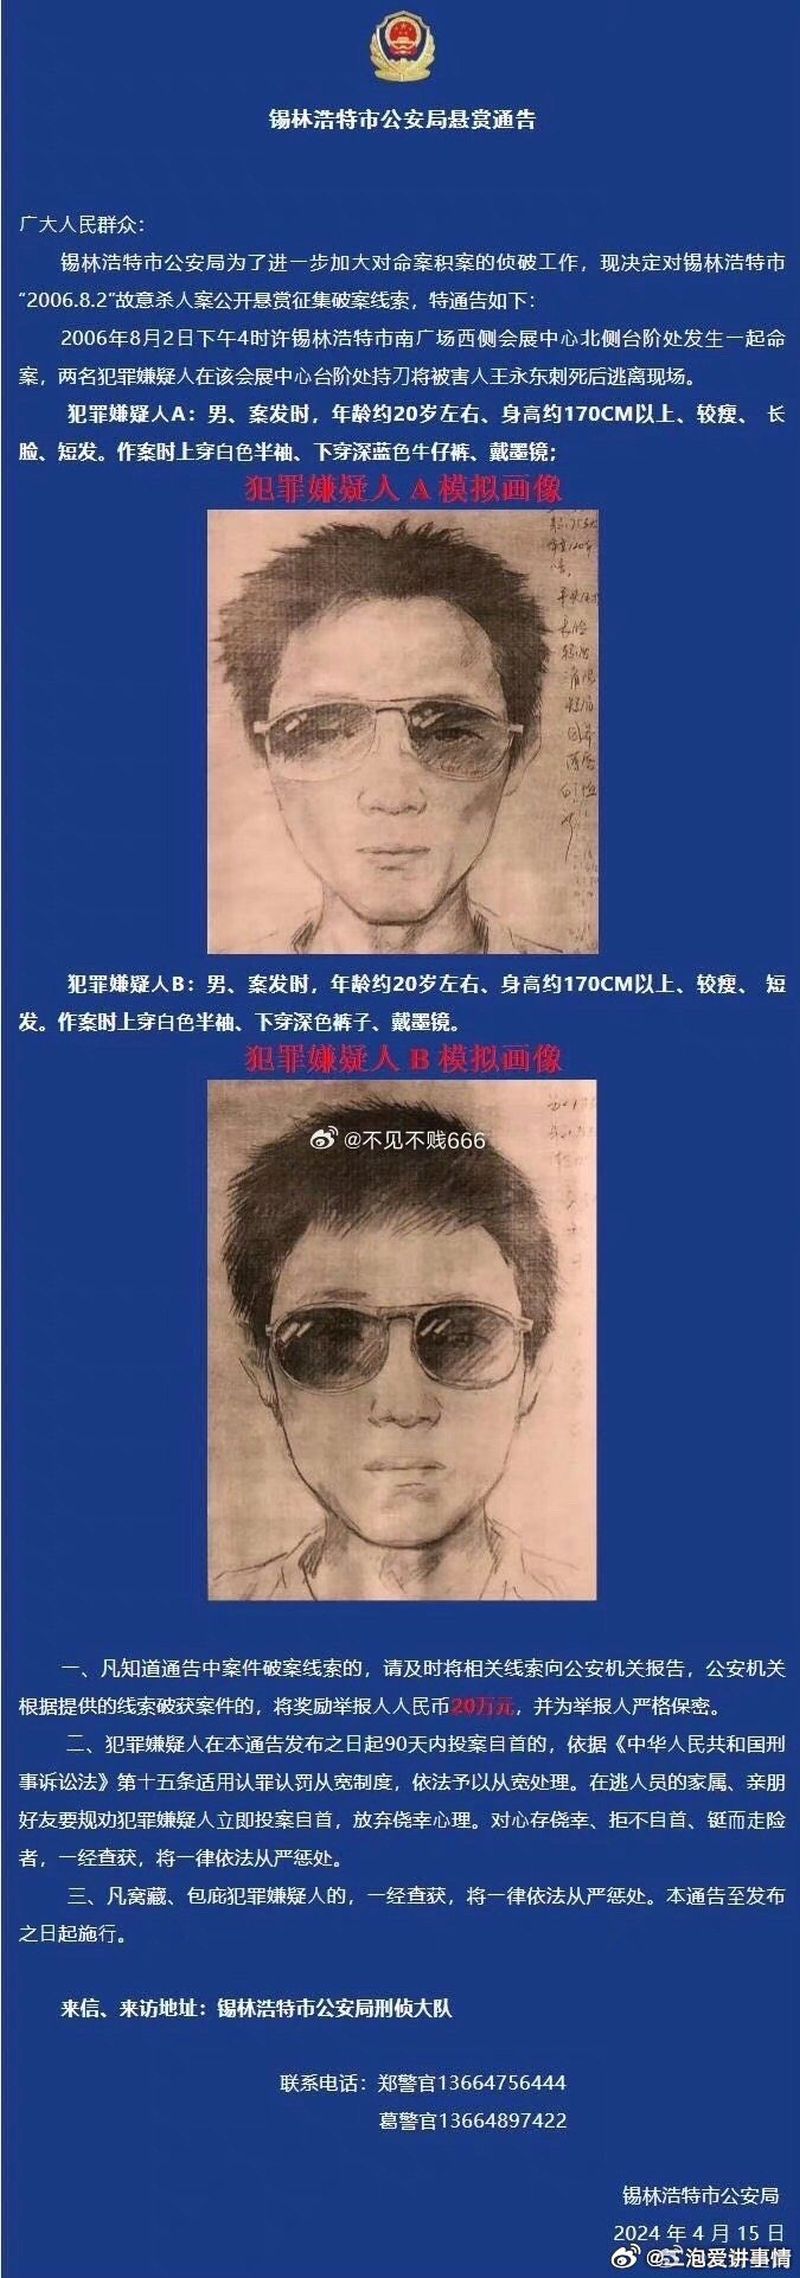 內蒙古錫林浩特市公安局通告中，一張命案逃犯模擬畫像被指像極了一名網紅。